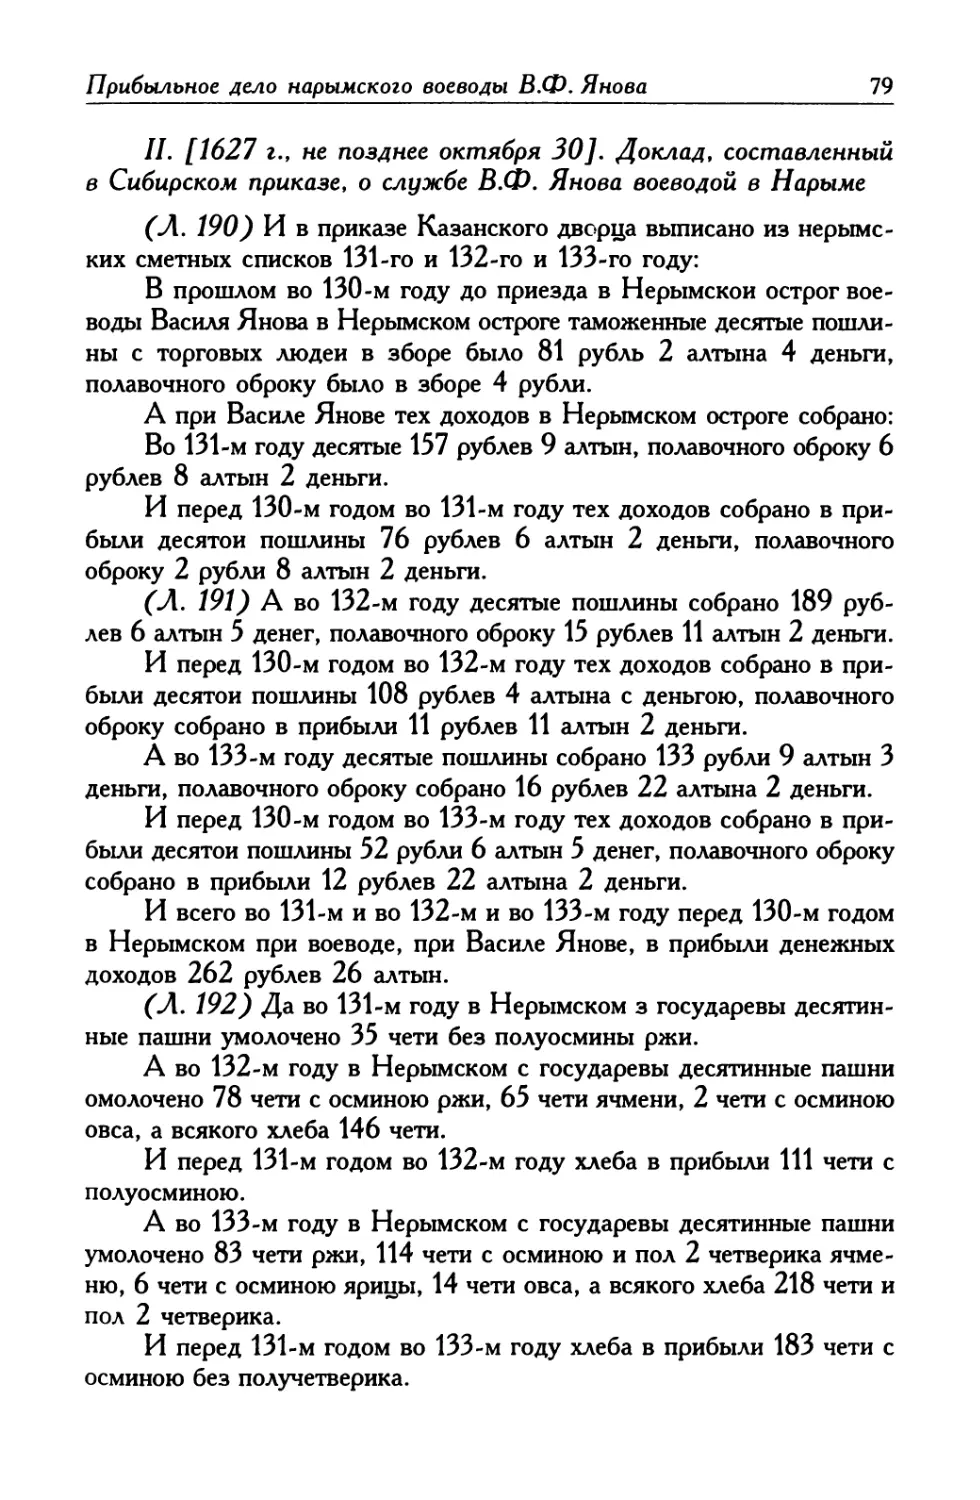 II. [1627 г., не позднее октября 30]. Доклад, составленный в Сибирском приказе, о службе В. Ф. Янова воеводой в Нарыме